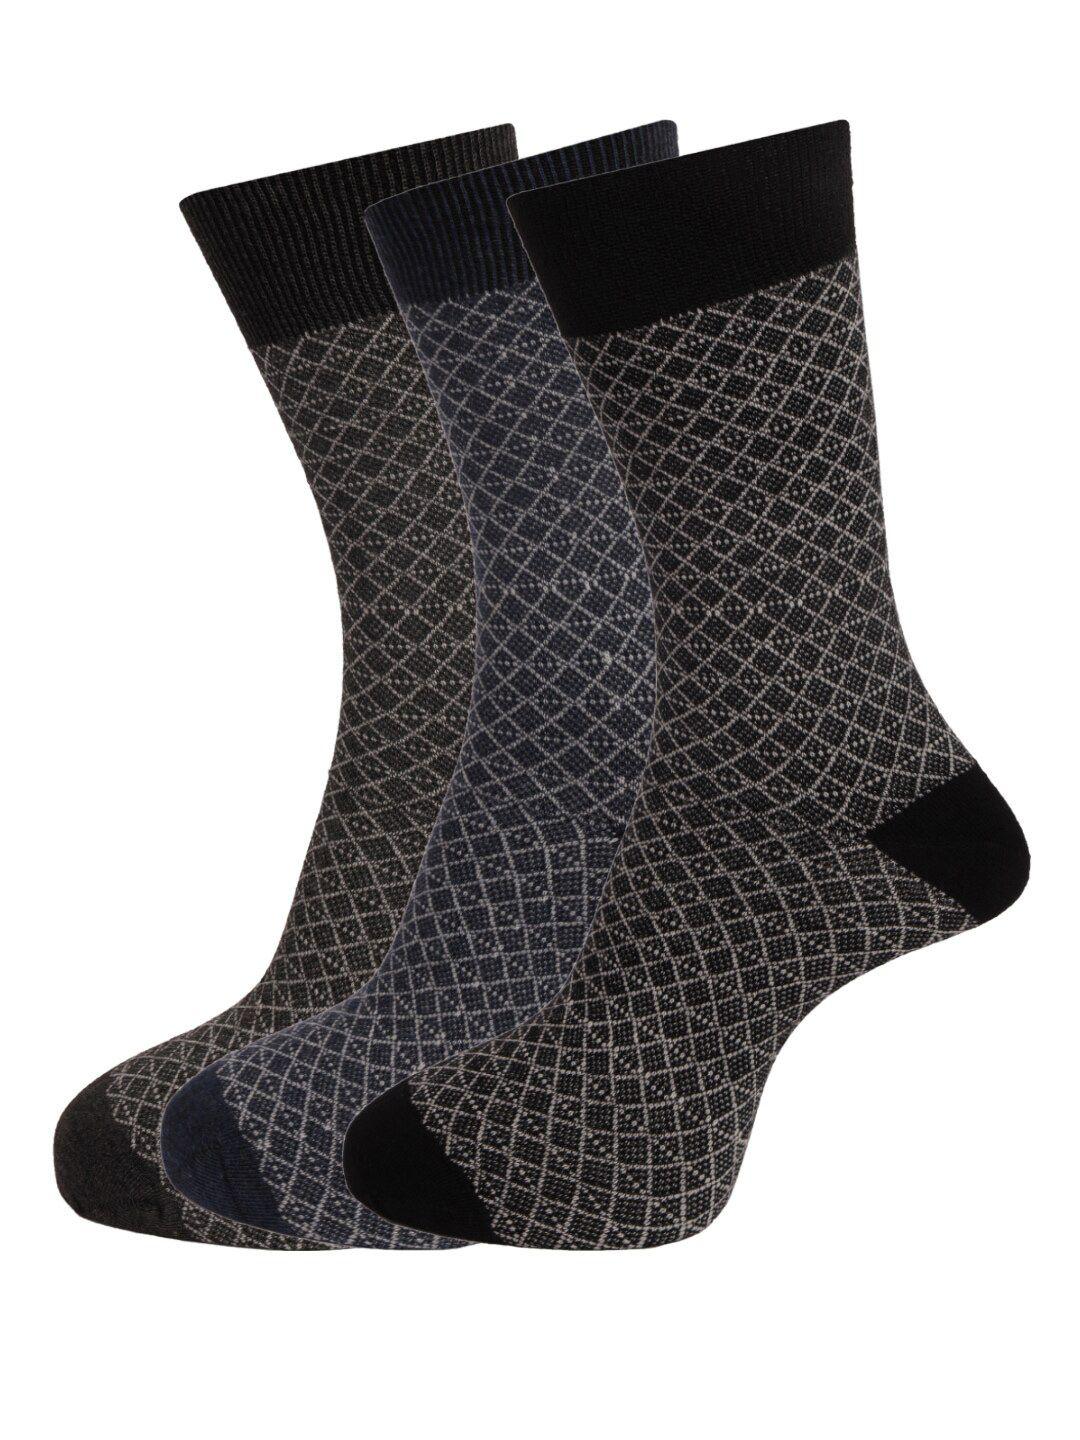 dollar-socks-men-pack-of-3-assorted-patterned-cotton-full-length-socks